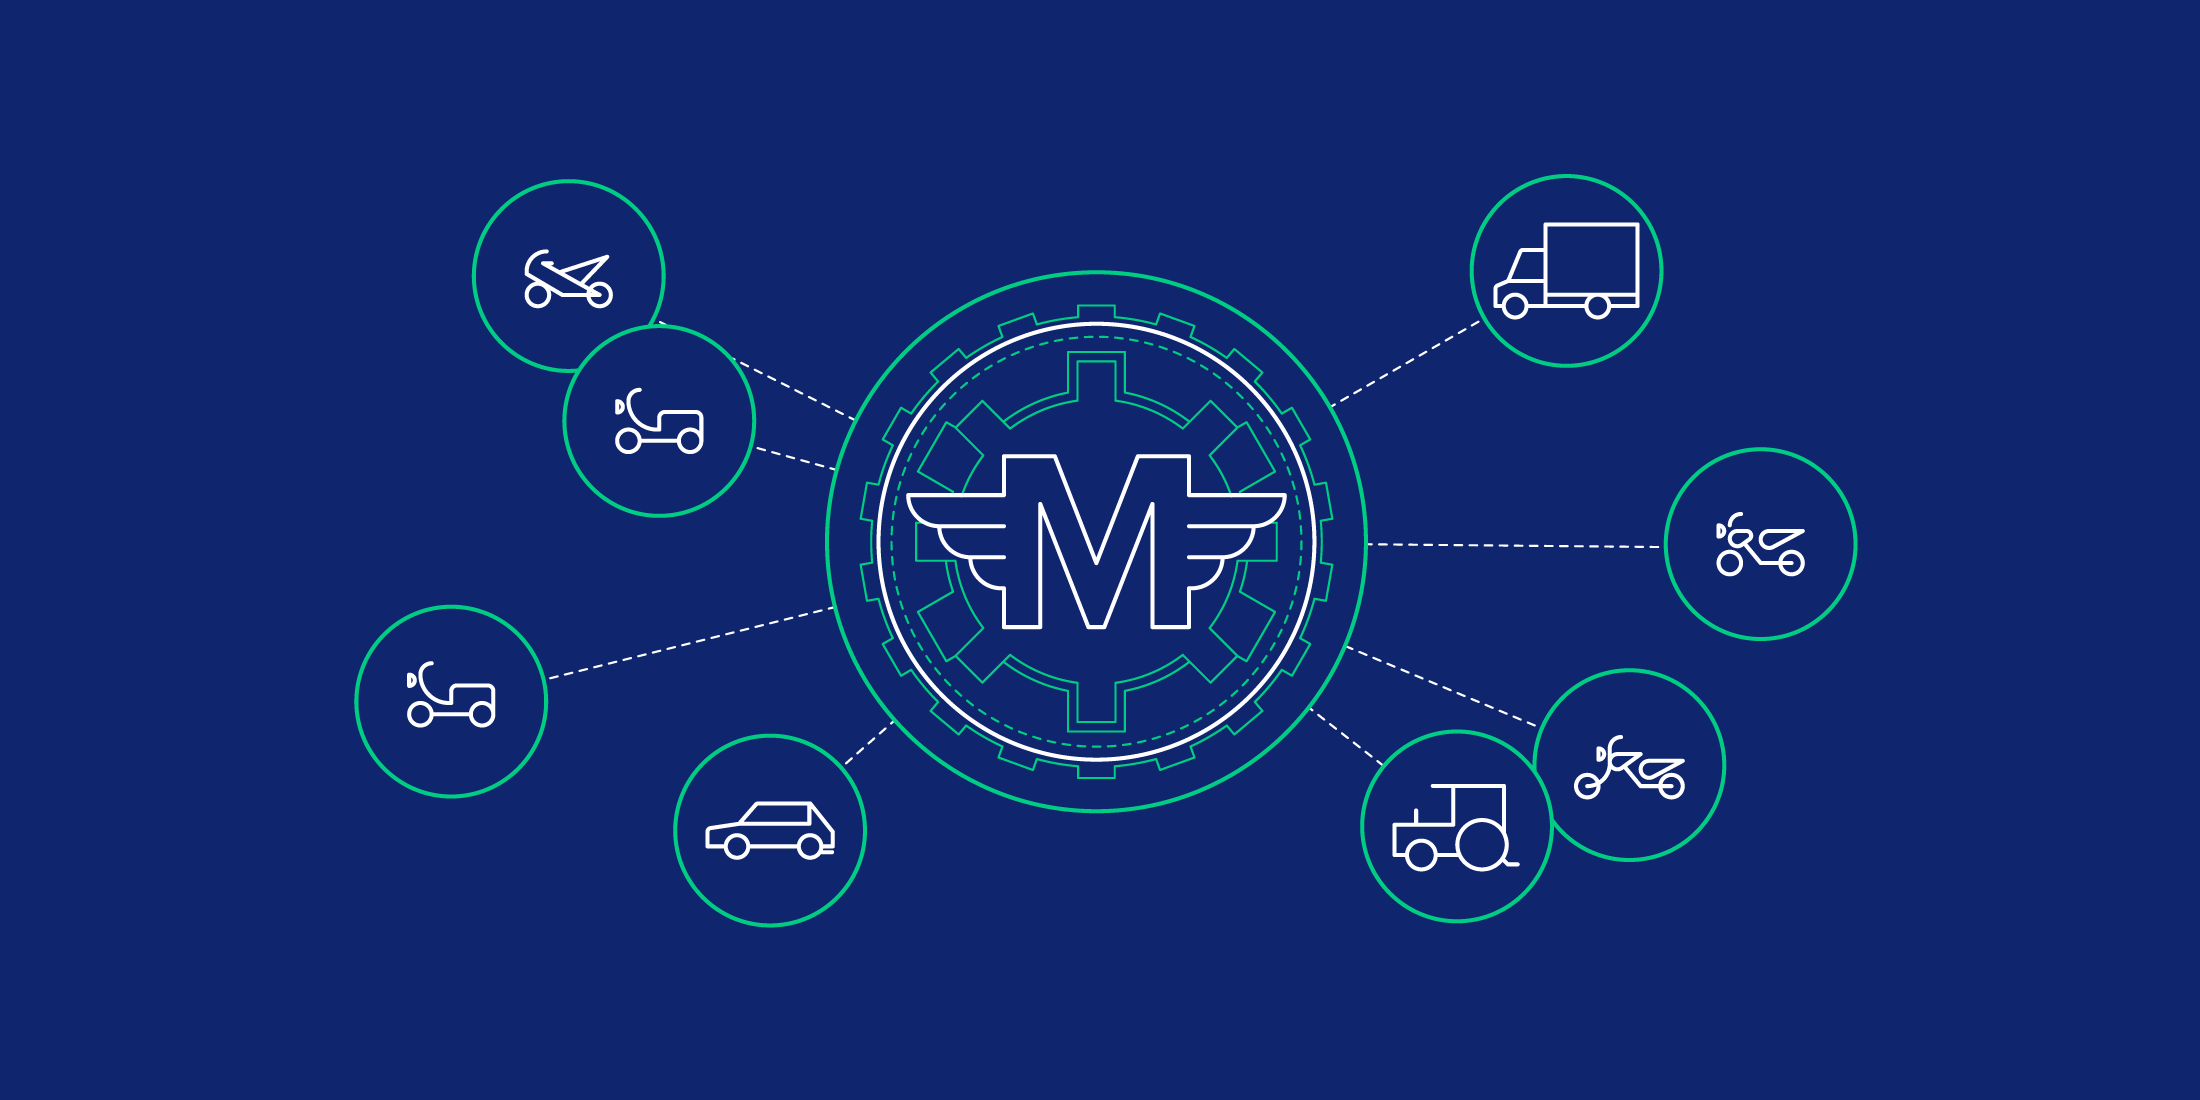 区块链、物联网和交通的未来:理解汽车币